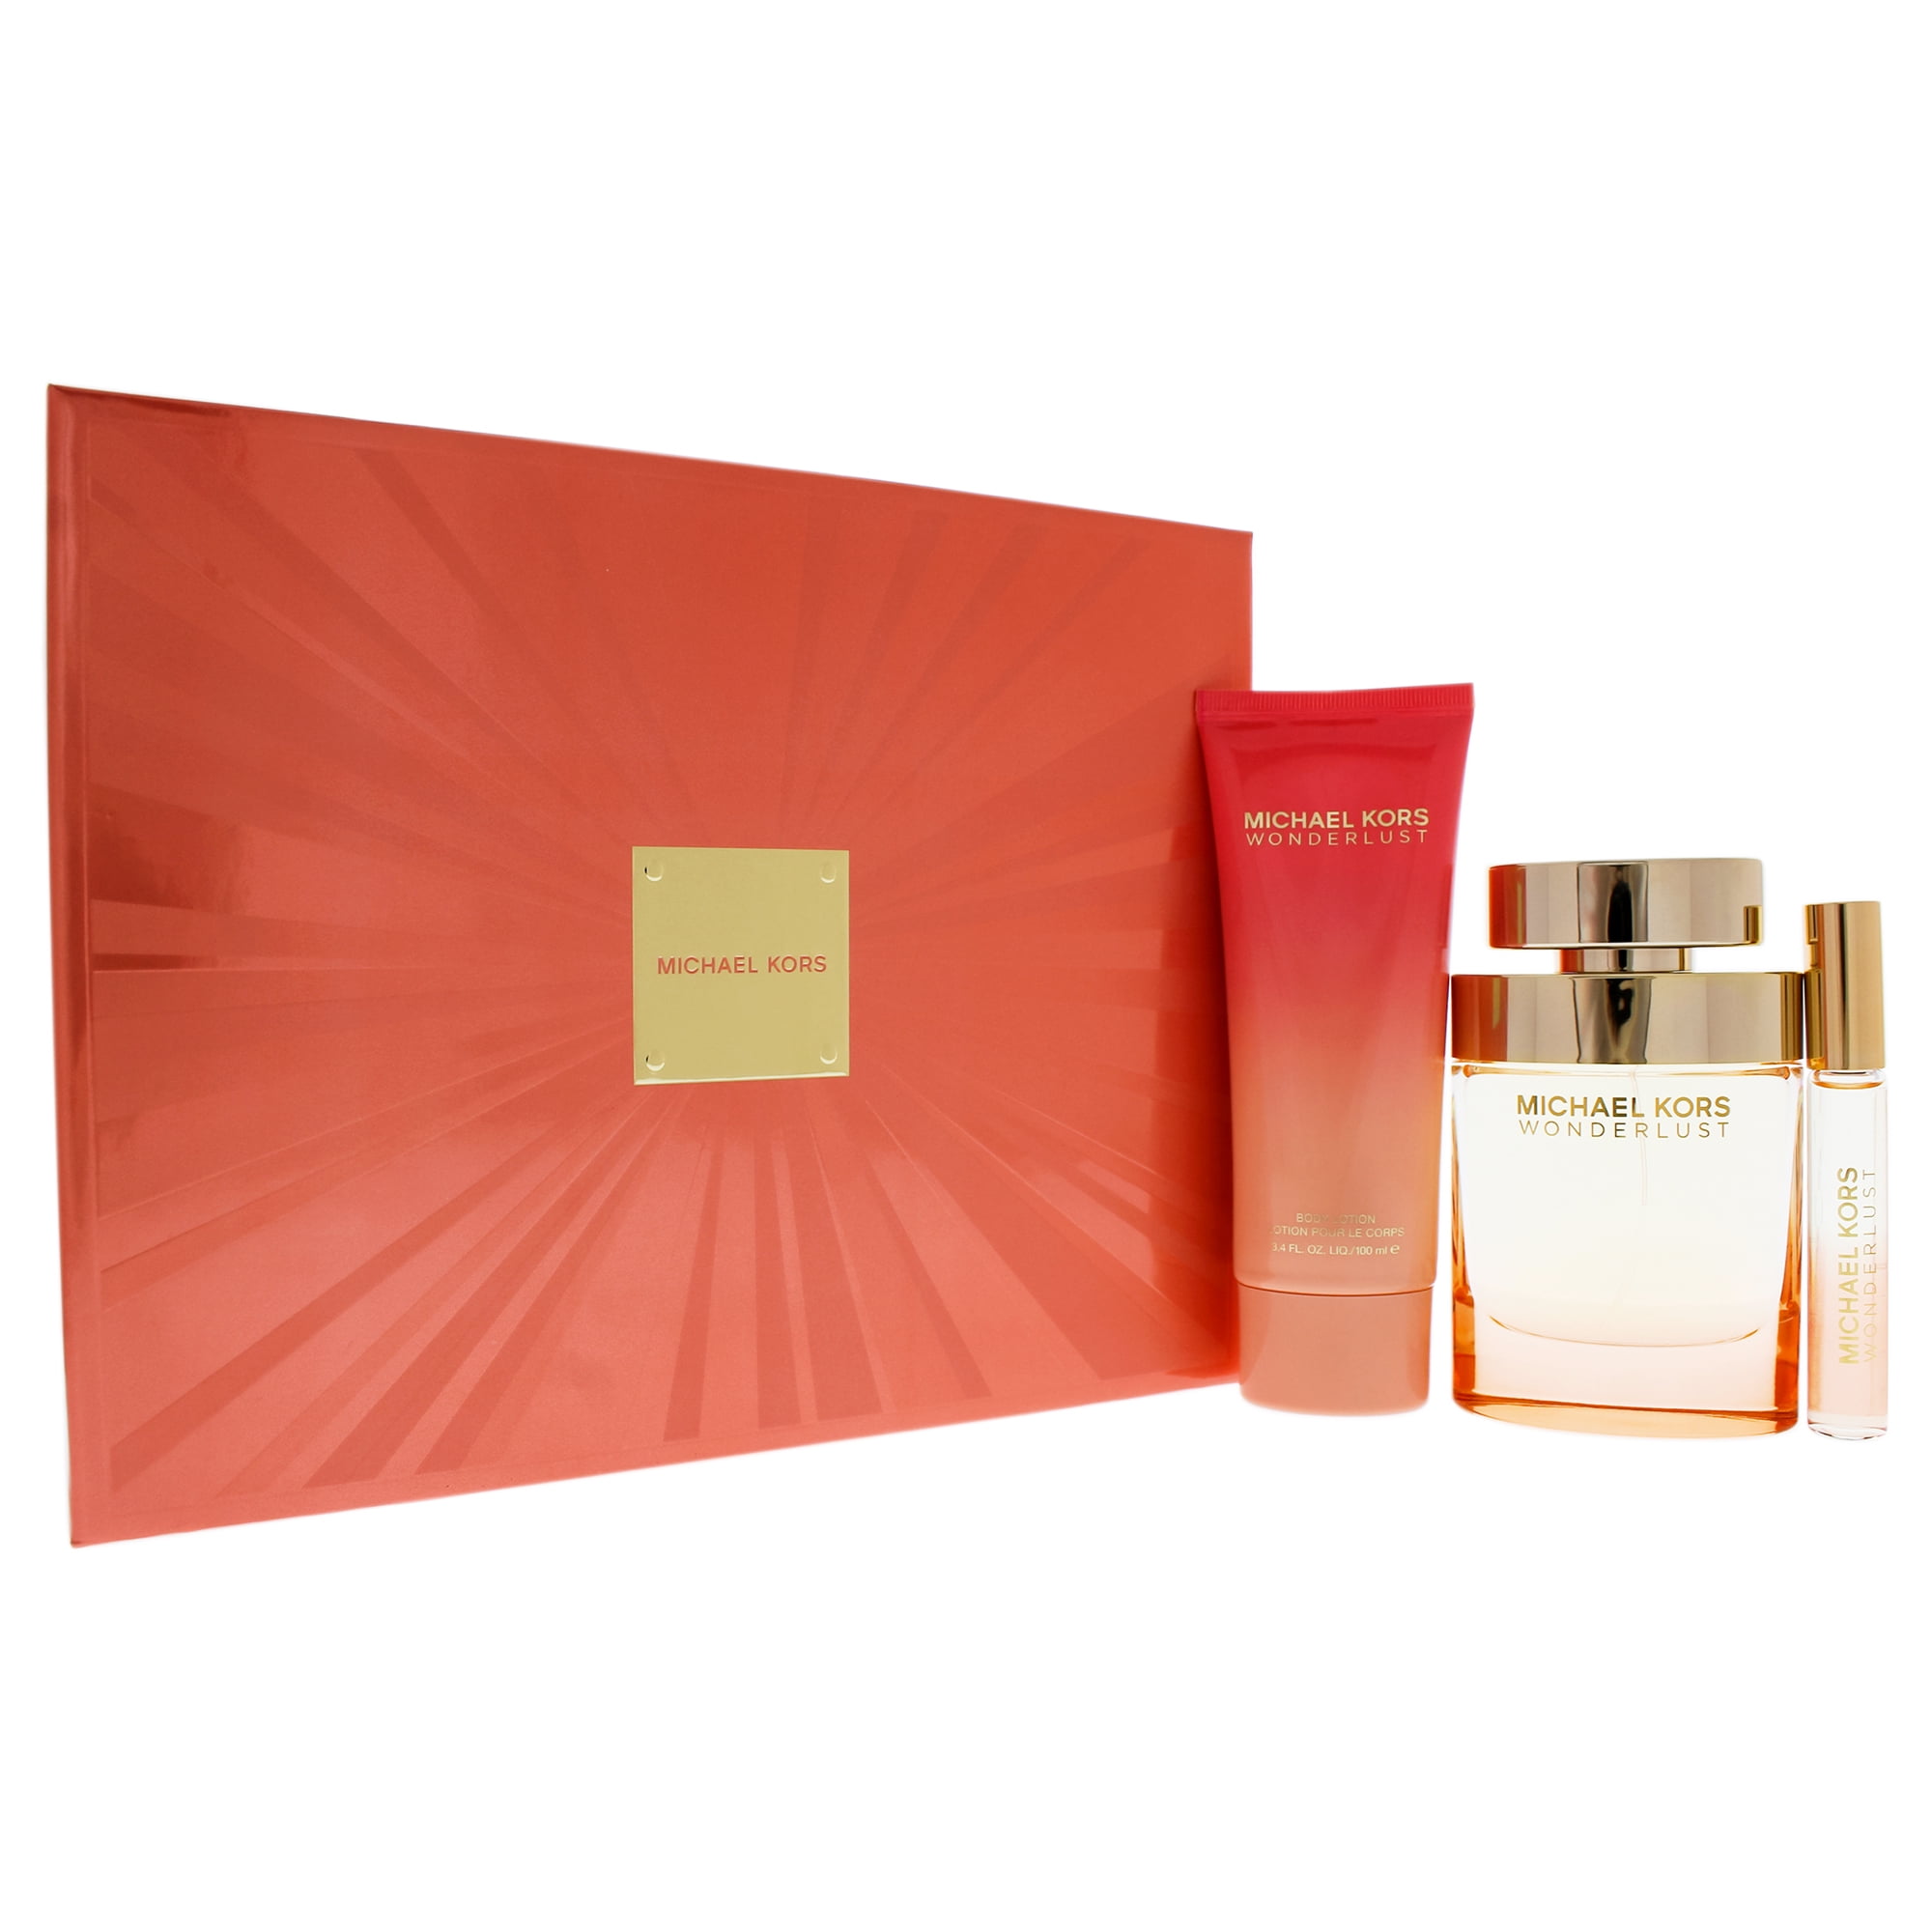 Amazoncom  Michael Kors Wonderlust 2 Piece Gift Set  Eau de Parfum Spray  and Body Lotion  Beauty  Personal Care